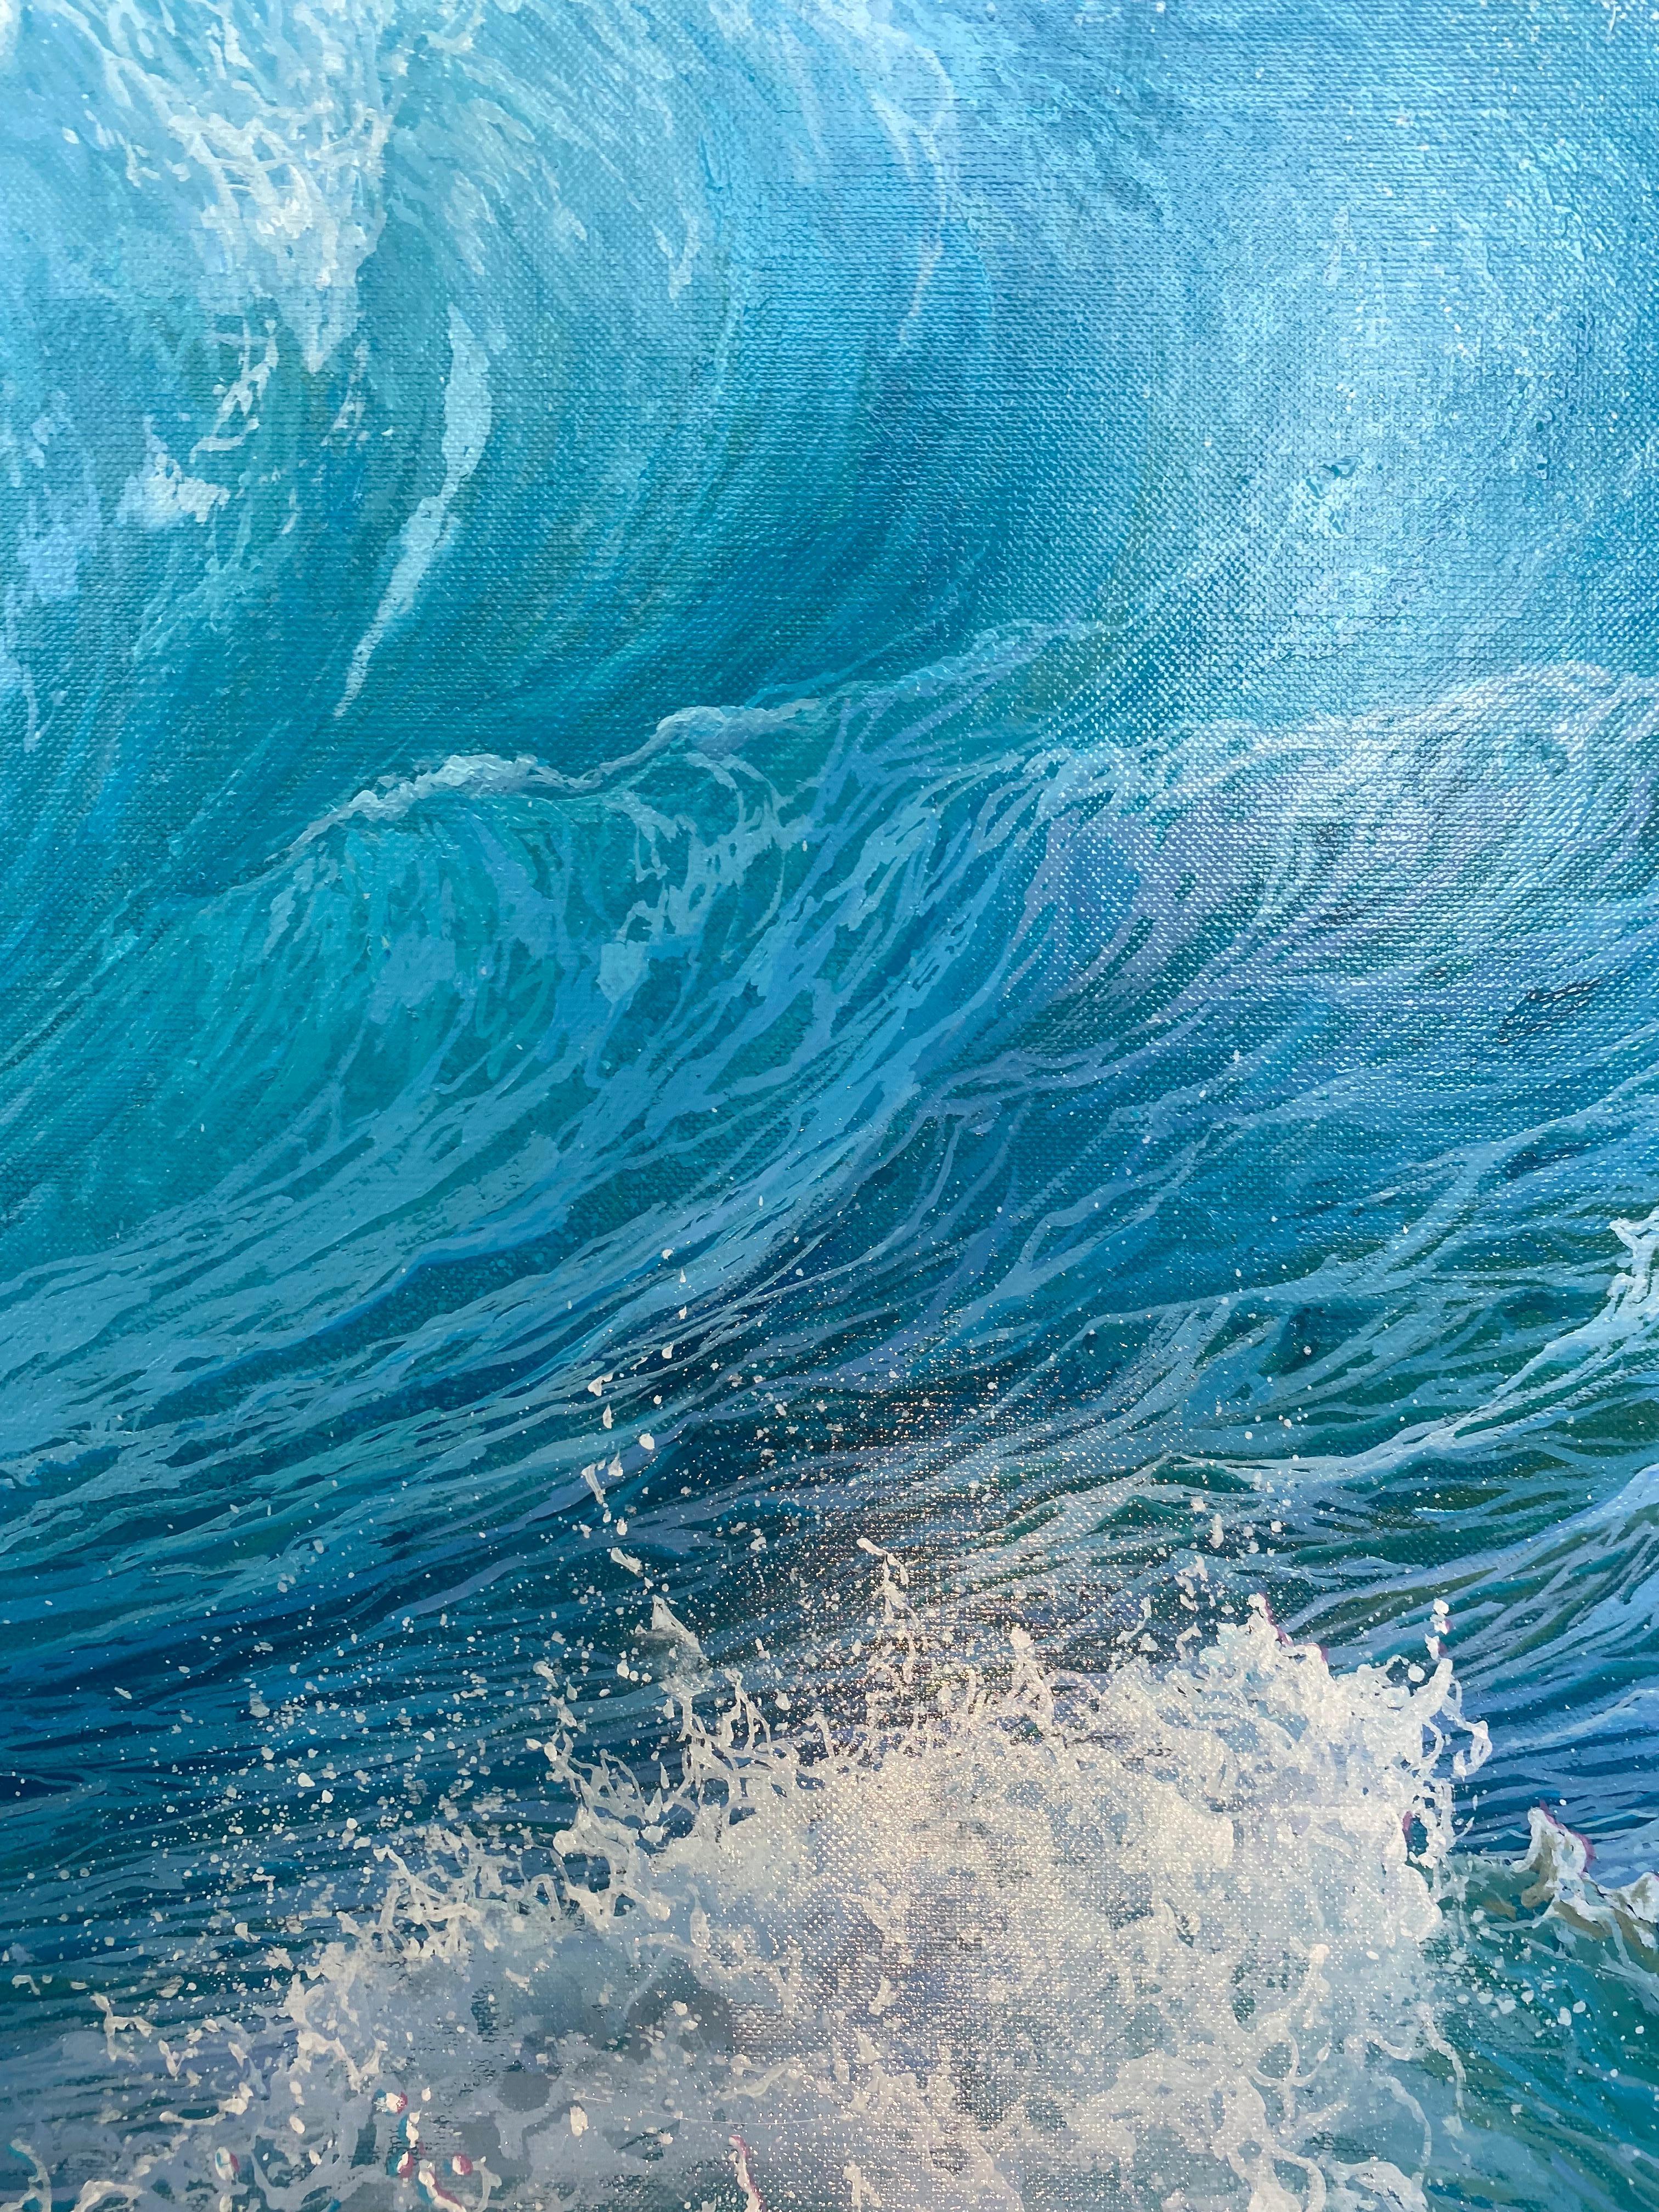 « Roaring seas », peinture contemporaine puissante de paysage marin bleu d'une vague qui s'effondre - Gris Landscape Painting par Marc Esteve